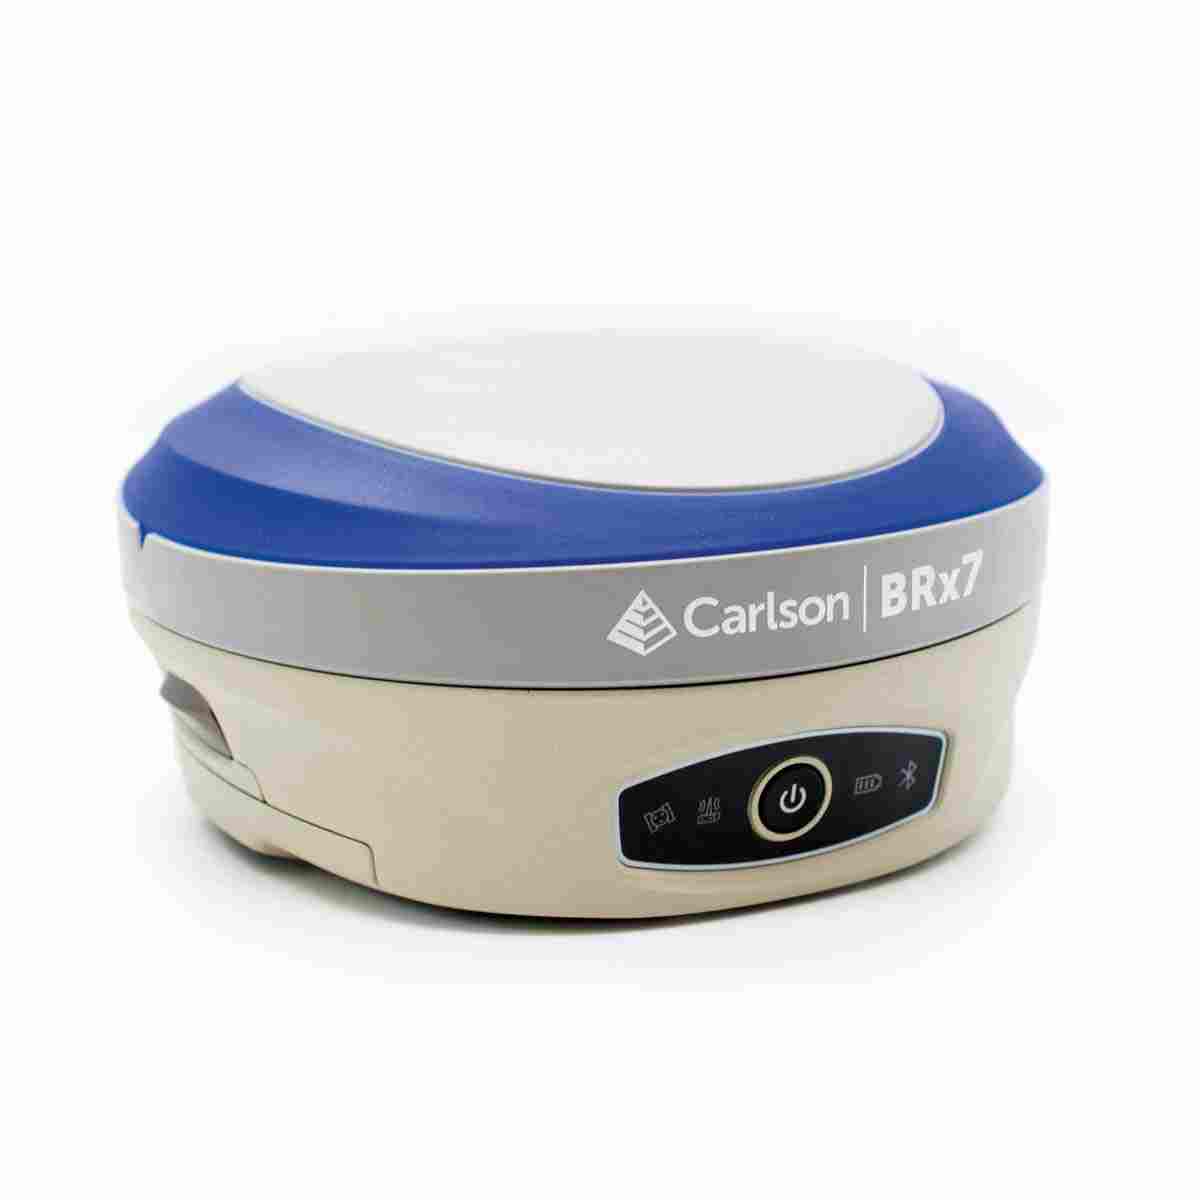 GNSS-Empfänger BRx7 von Carlson 